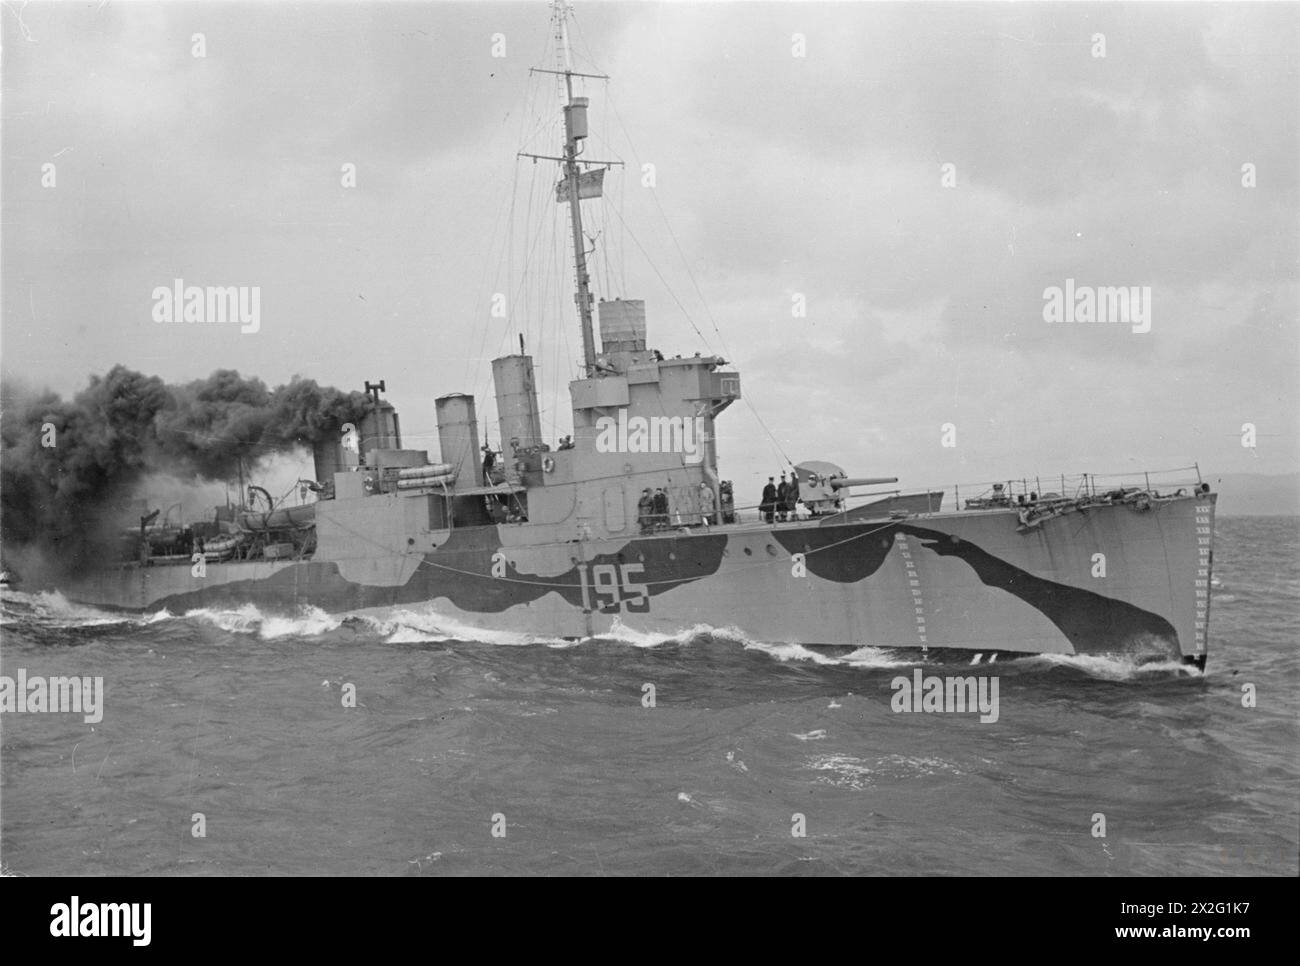 UN DESTROYER AMERICANO NELLA MARINA BRITANNICA. DICEMBRE 1942. - HMS WELLS, ex cacciatorpediniere americano, ora nella Marina britannica Foto Stock